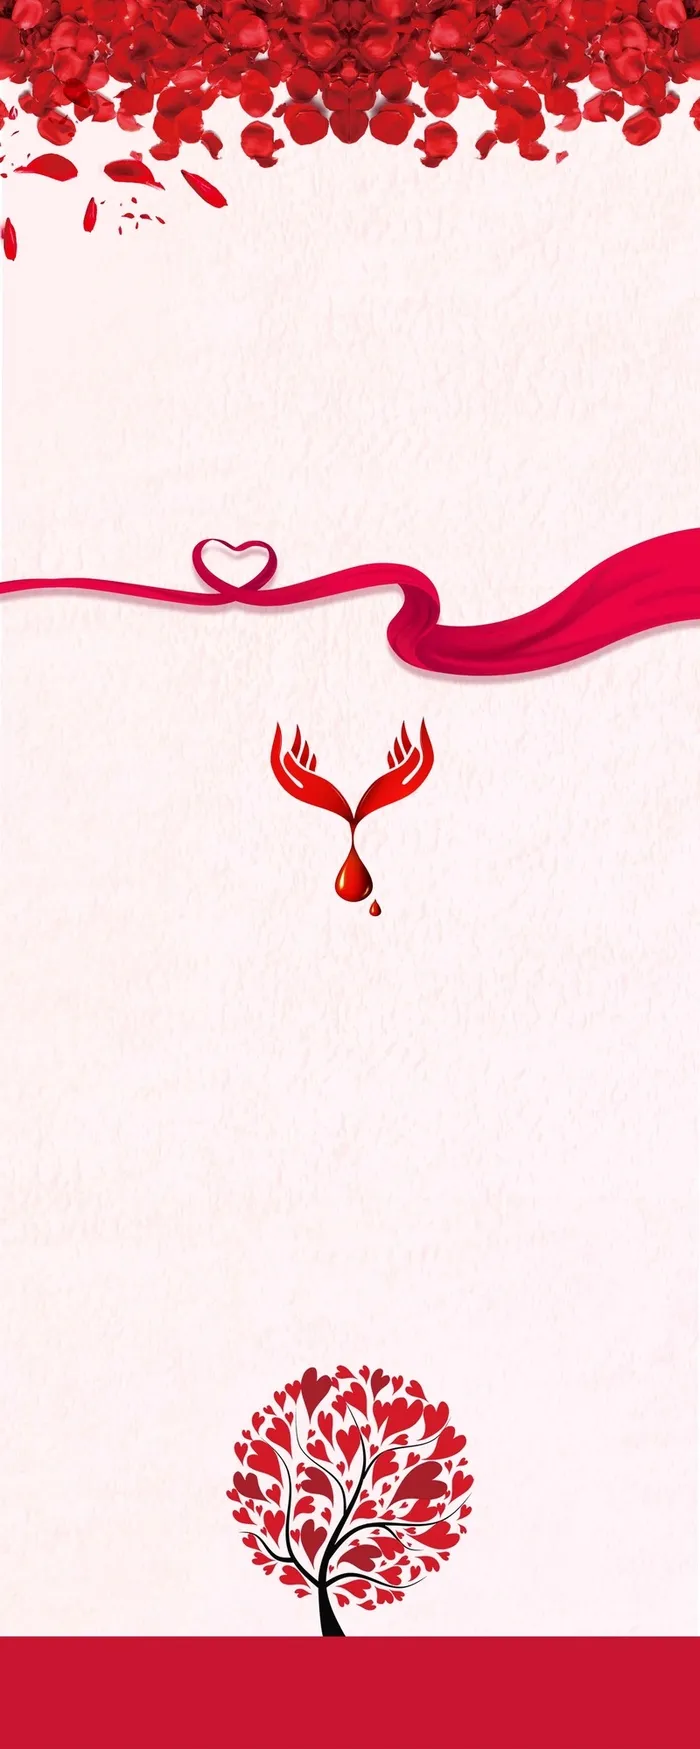 爱心献血公益海报展架背景模板高清